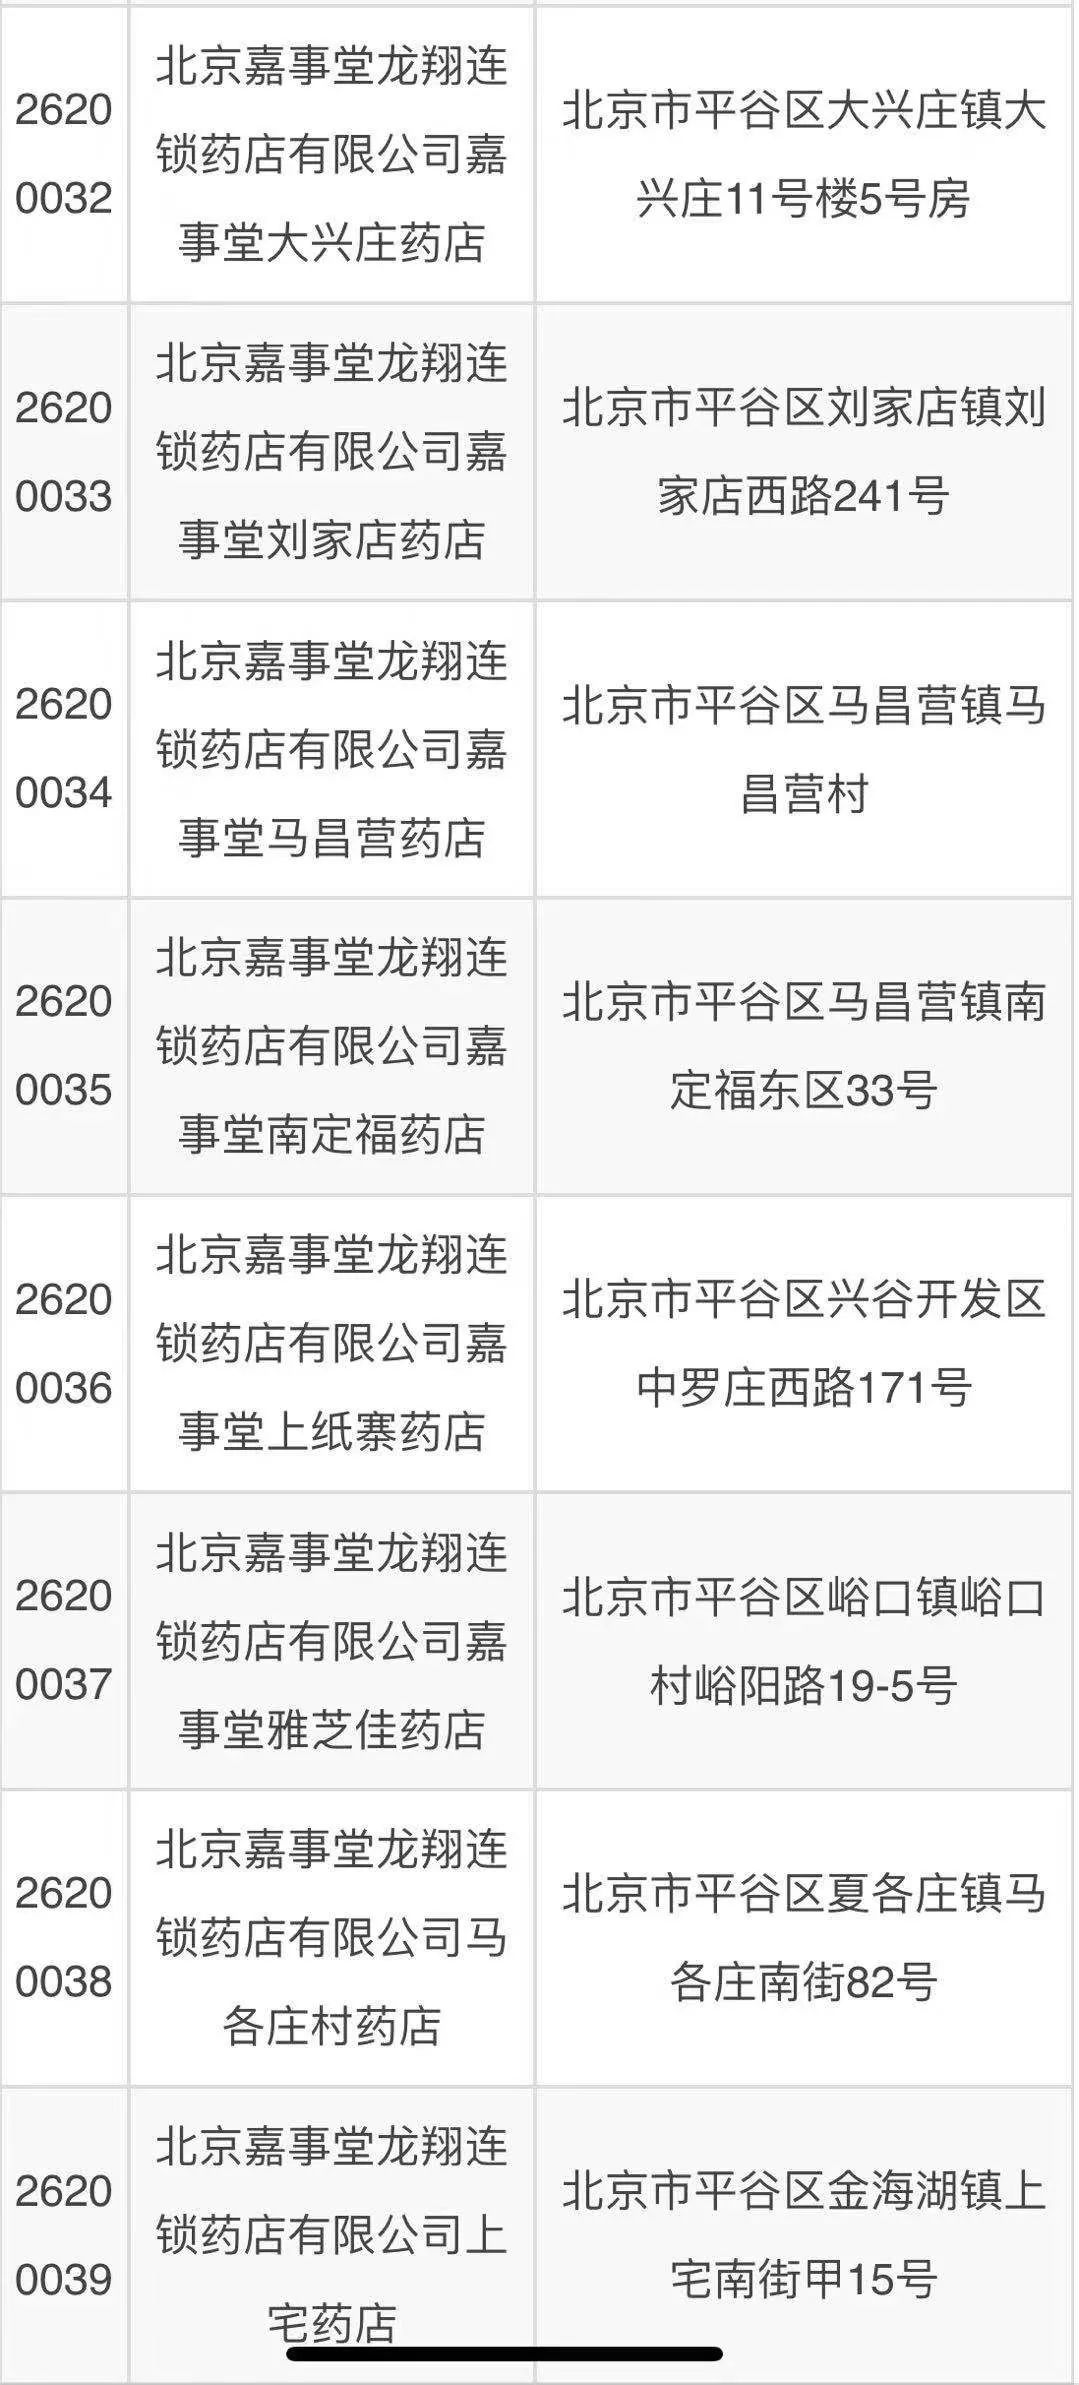 北京哪些药店买药能用医保 附名单 有没有您家附近的 最爱大北京 微信公众号文章阅读 Wemp